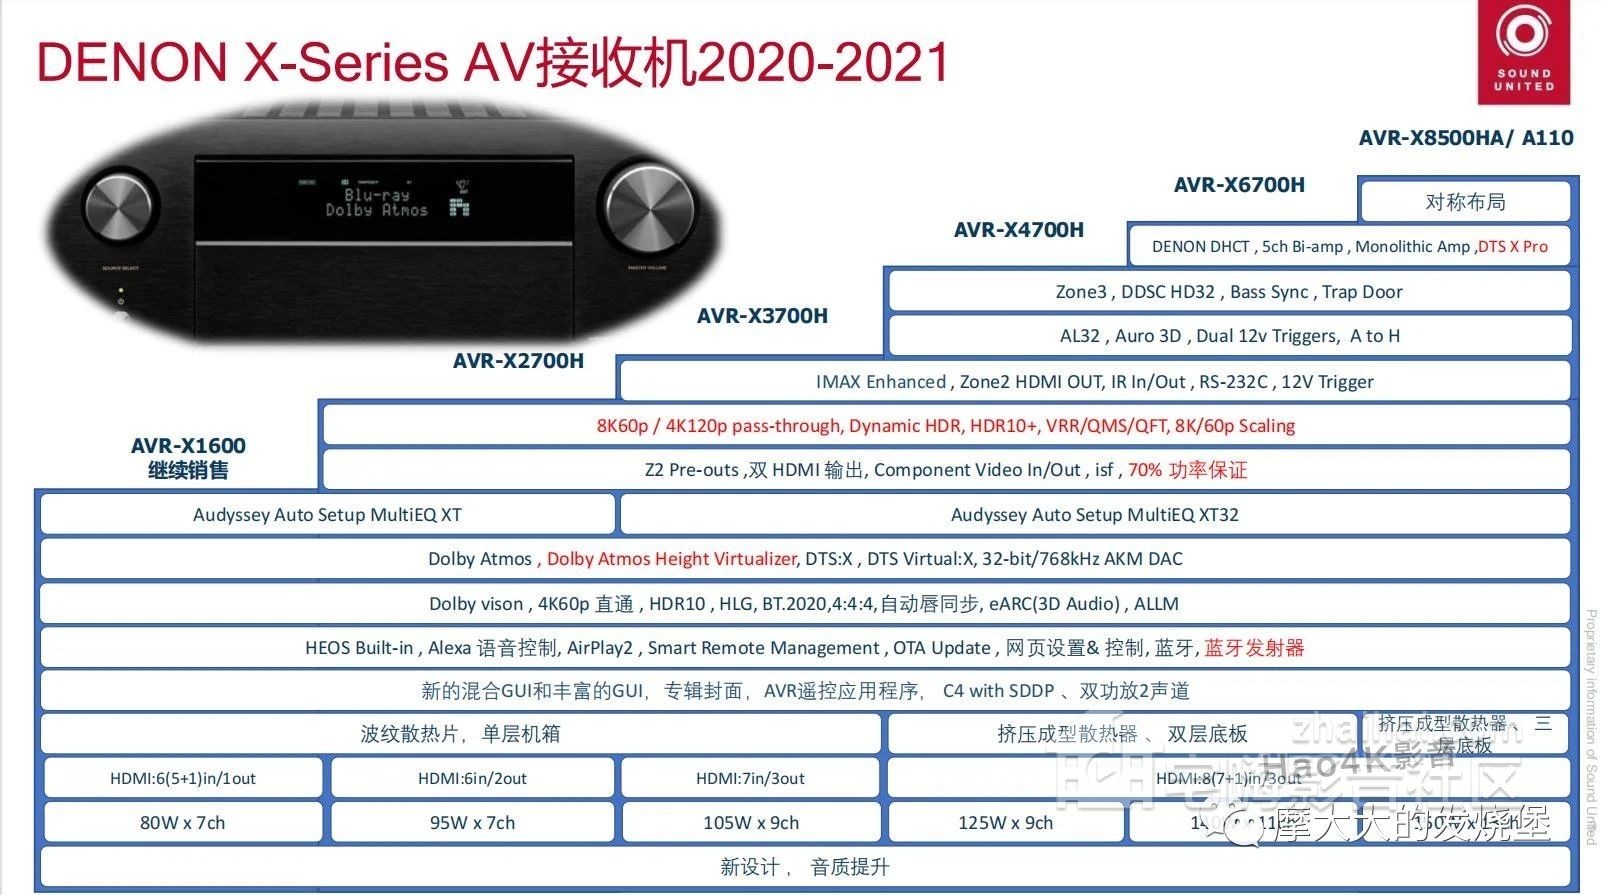 AVC-A110 (55).JPEG